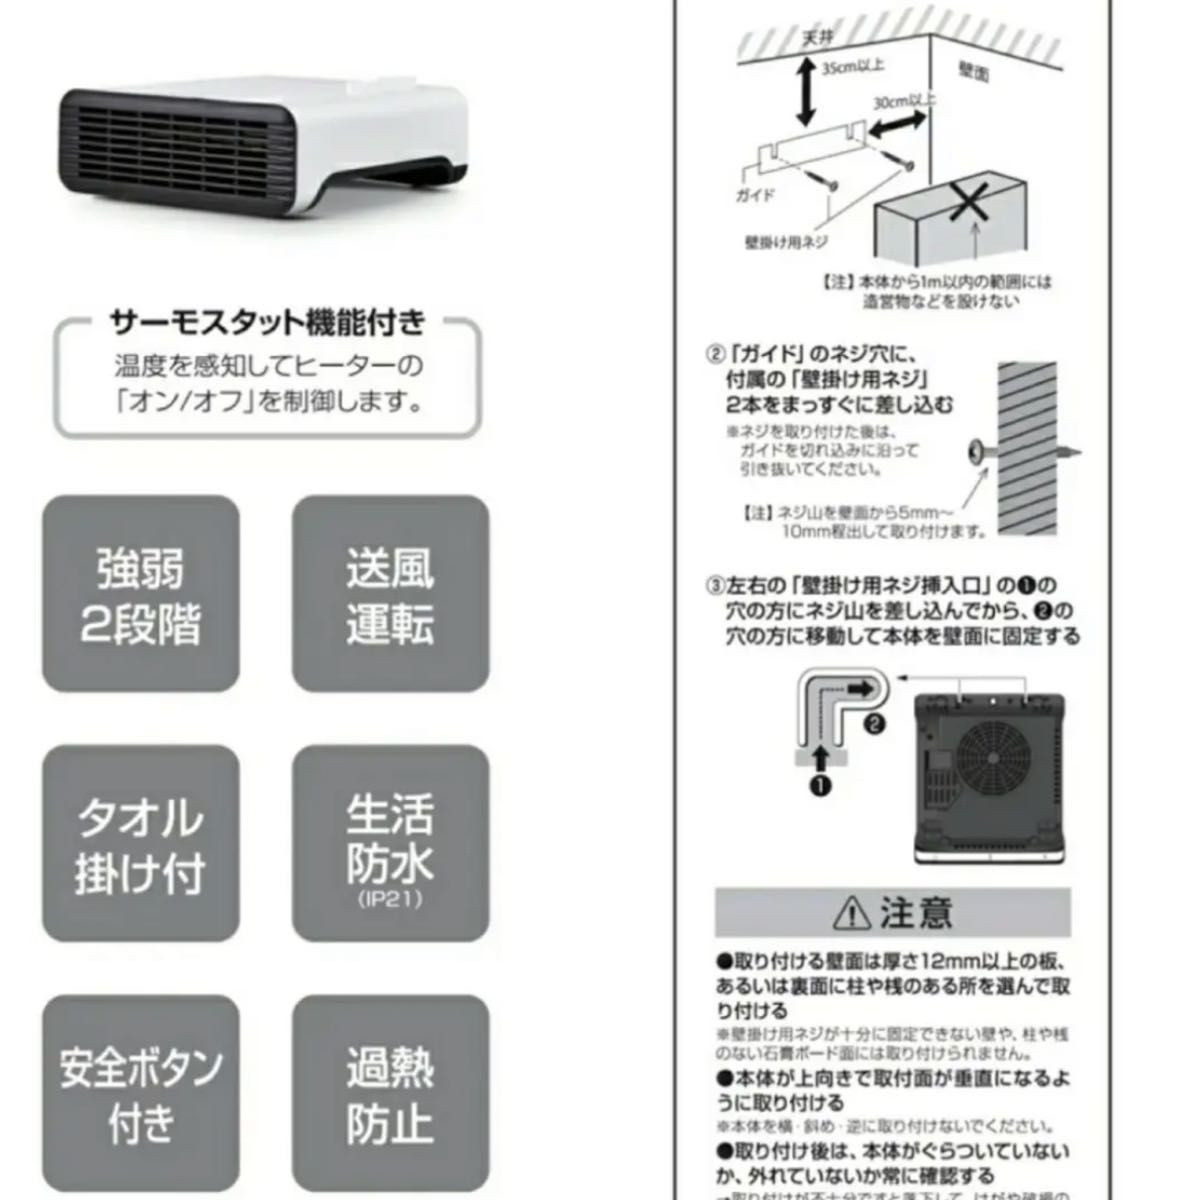 121・サンヨー SANYO・エアコンリモコン・品番RCS-FB1 - 空調